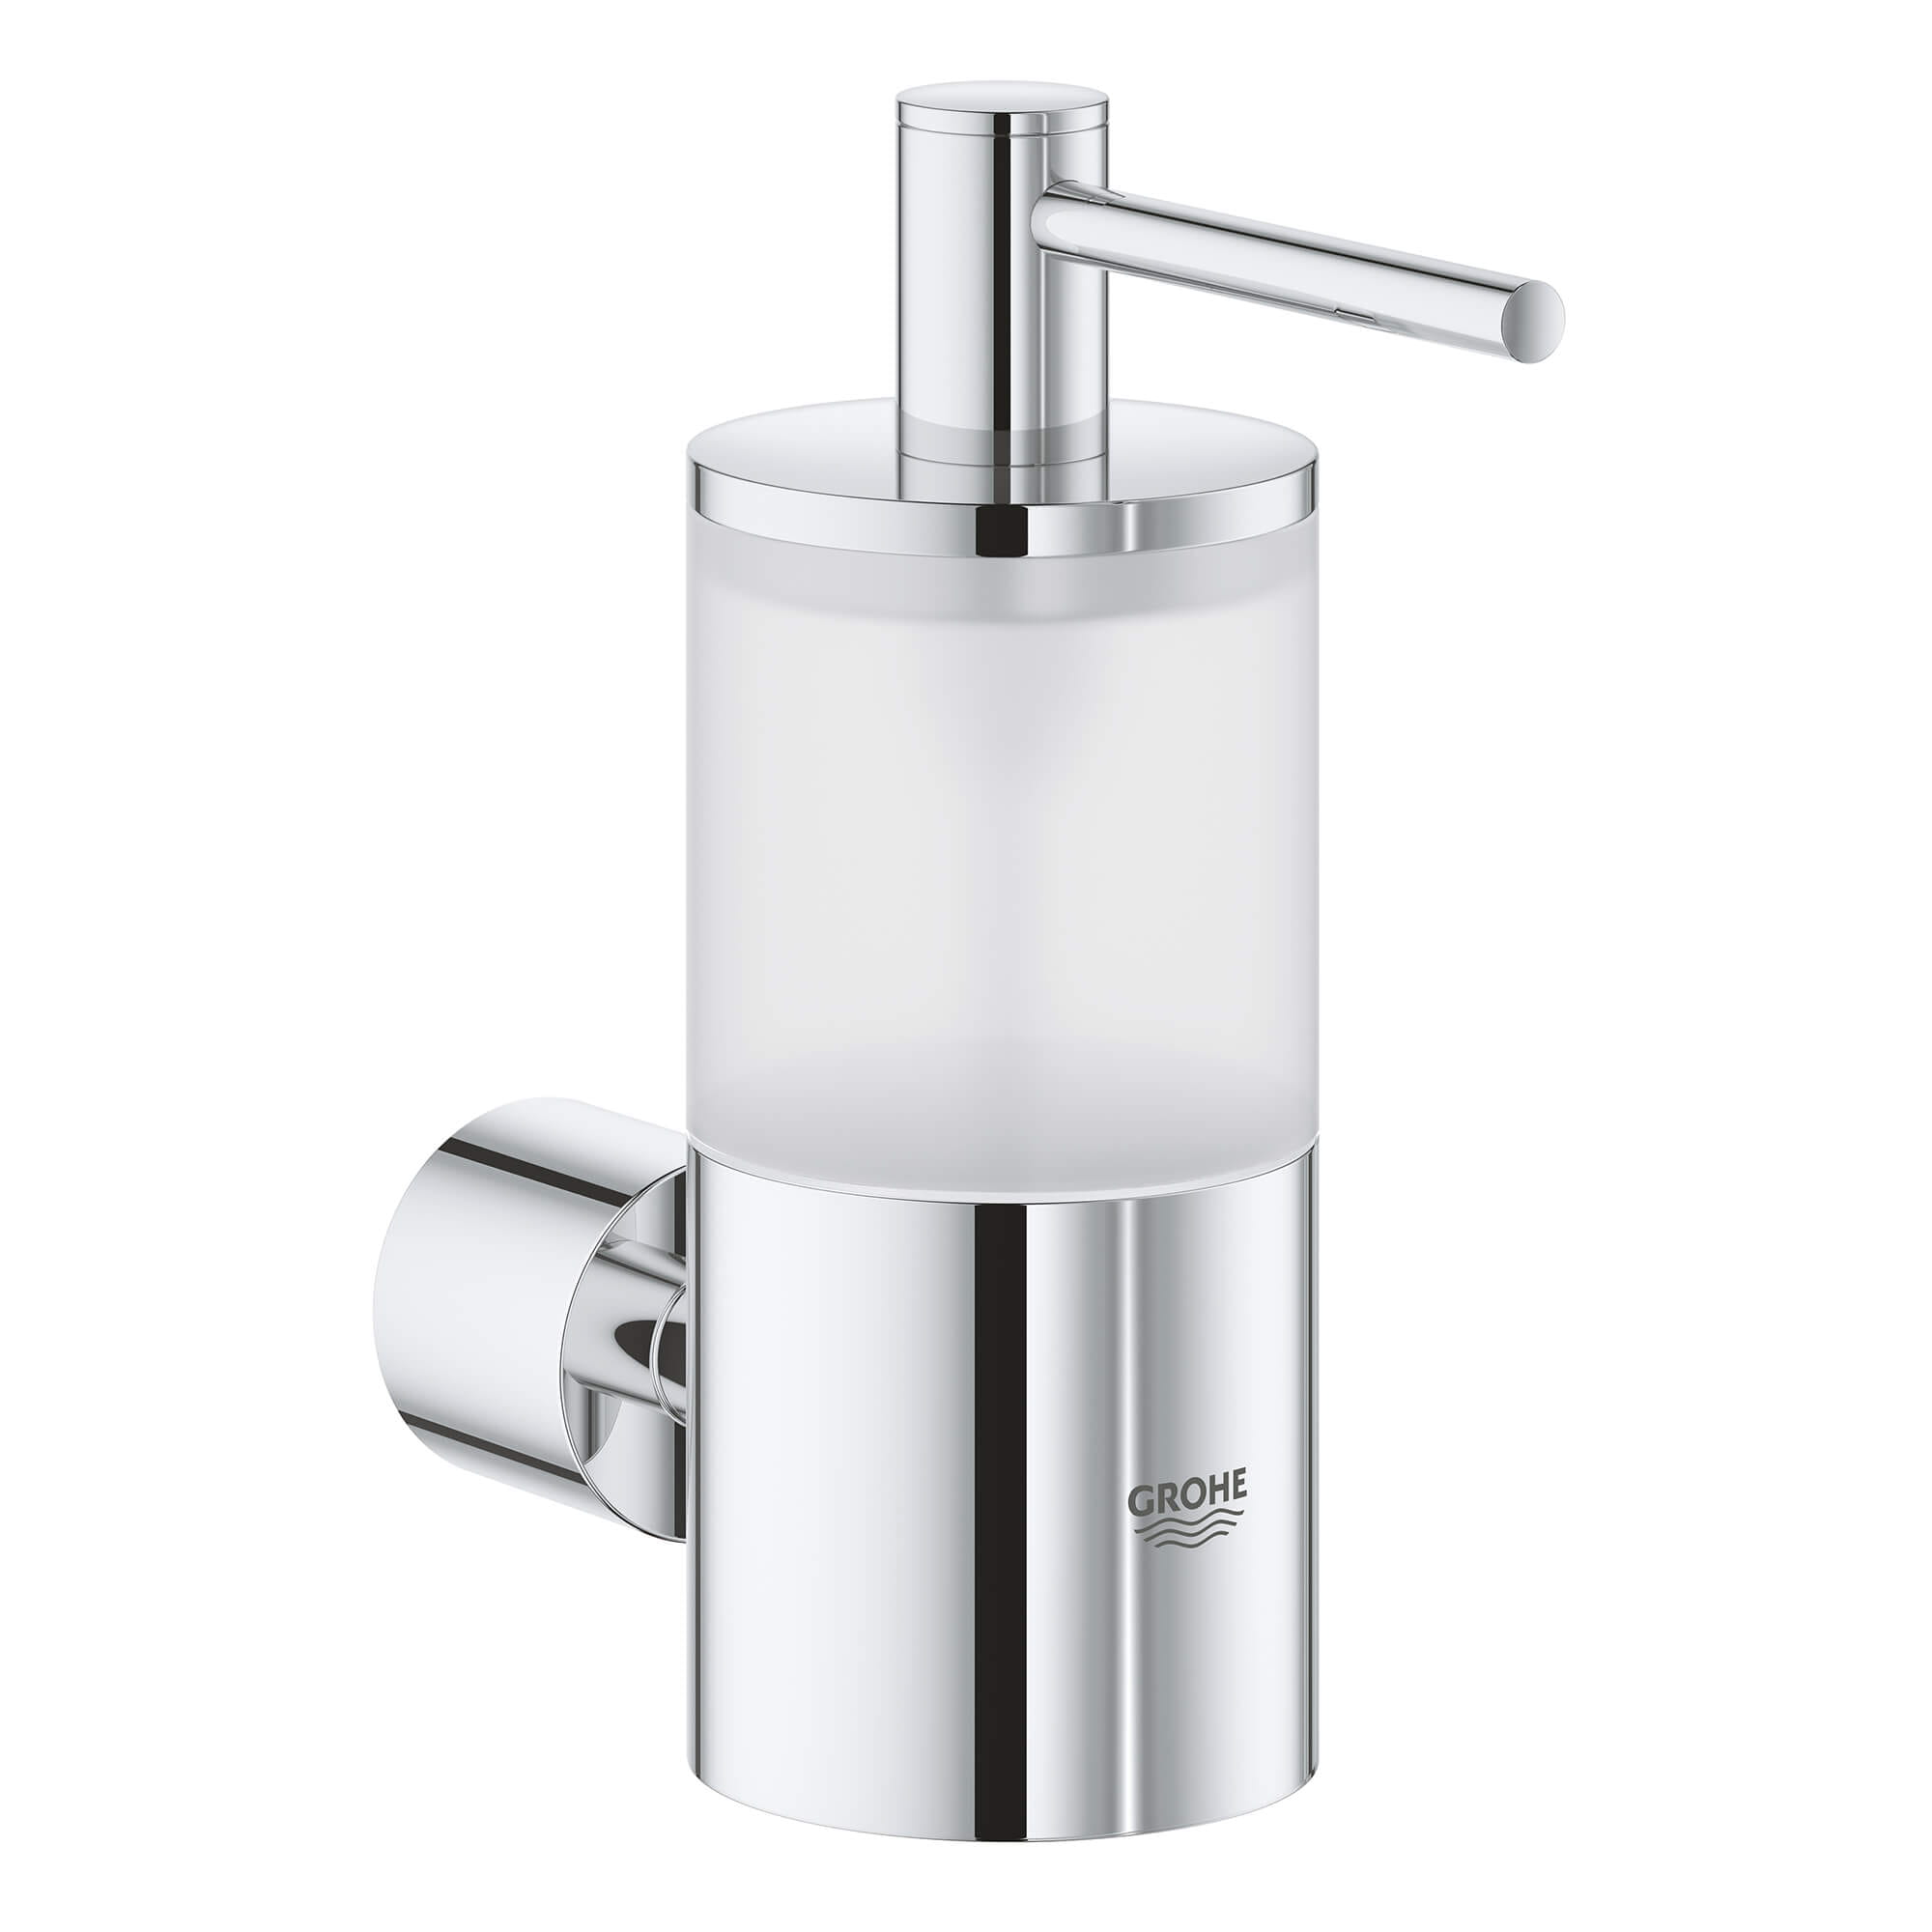 Holder For Glass, Soap Dish Or Soap Dispenser